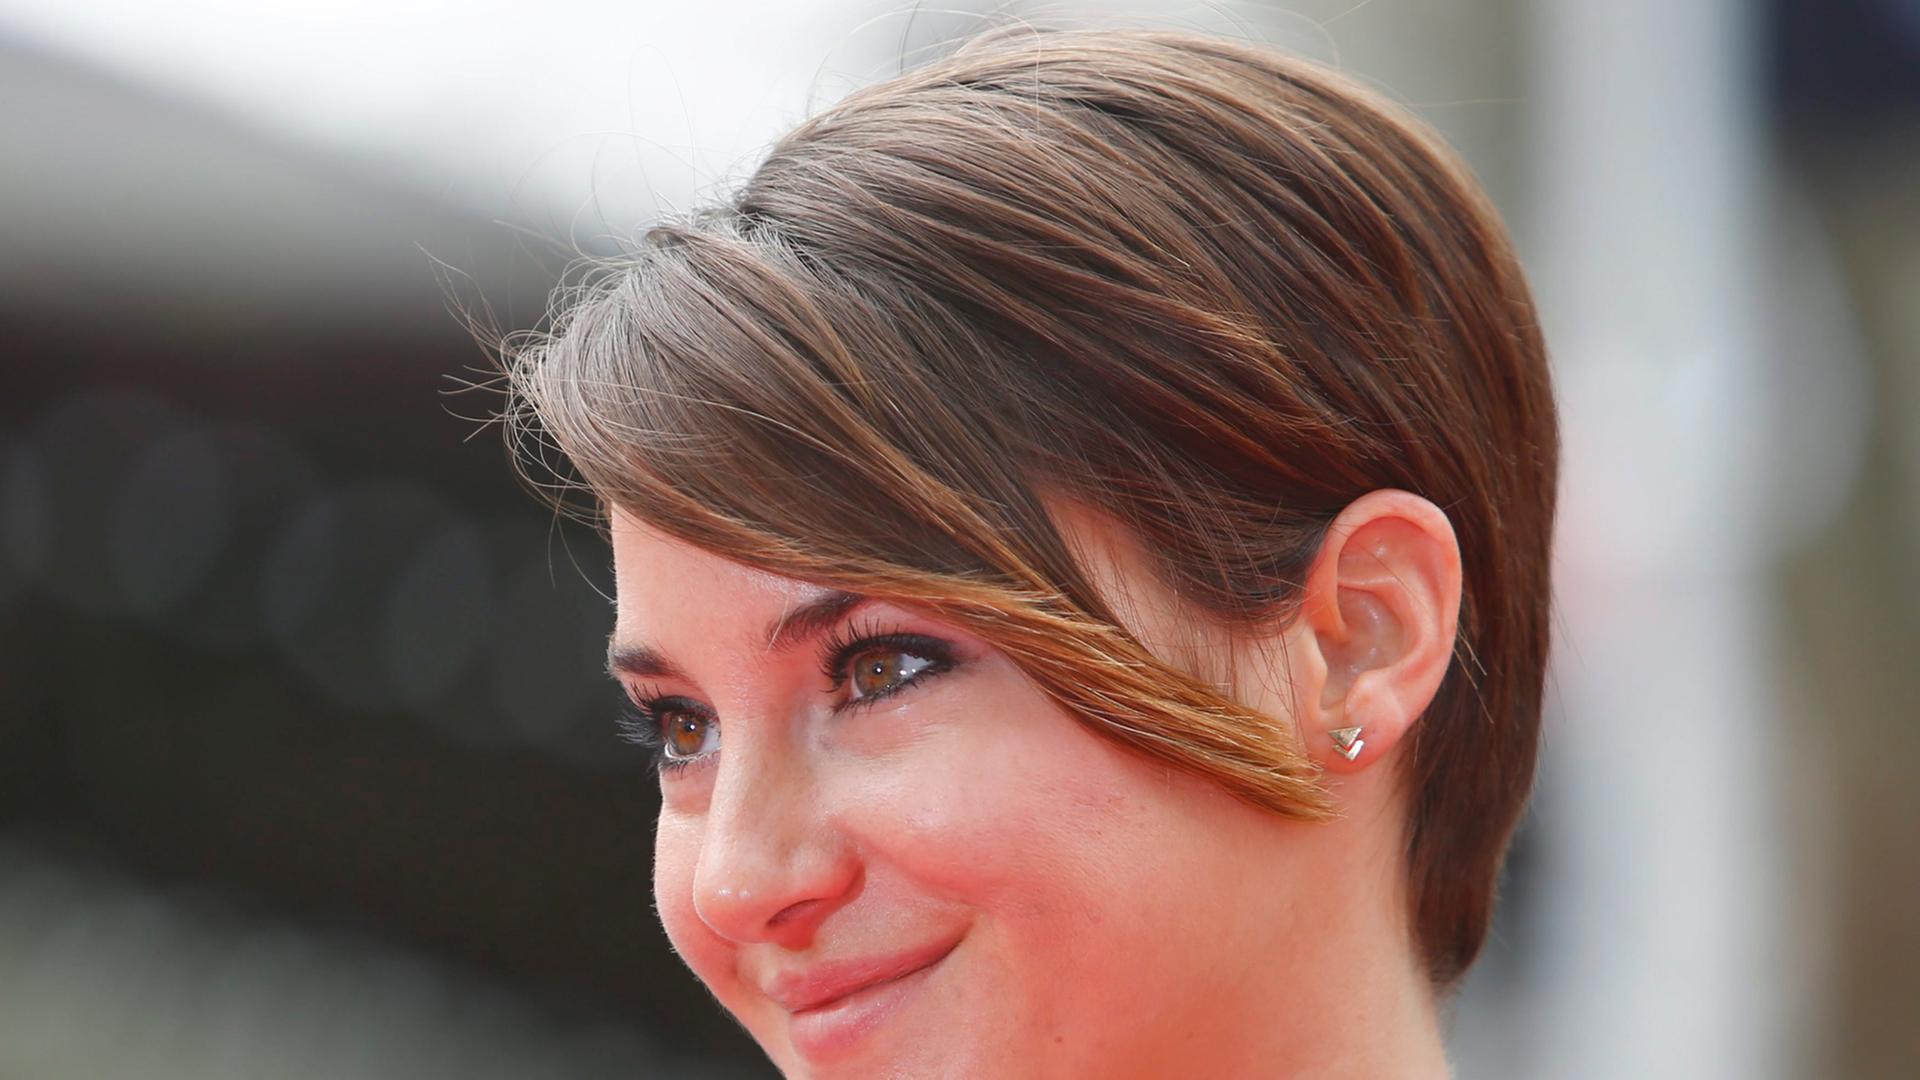 Schauspielerin Shailene Woodley, aufgenommen am 30. März 2014 in London.